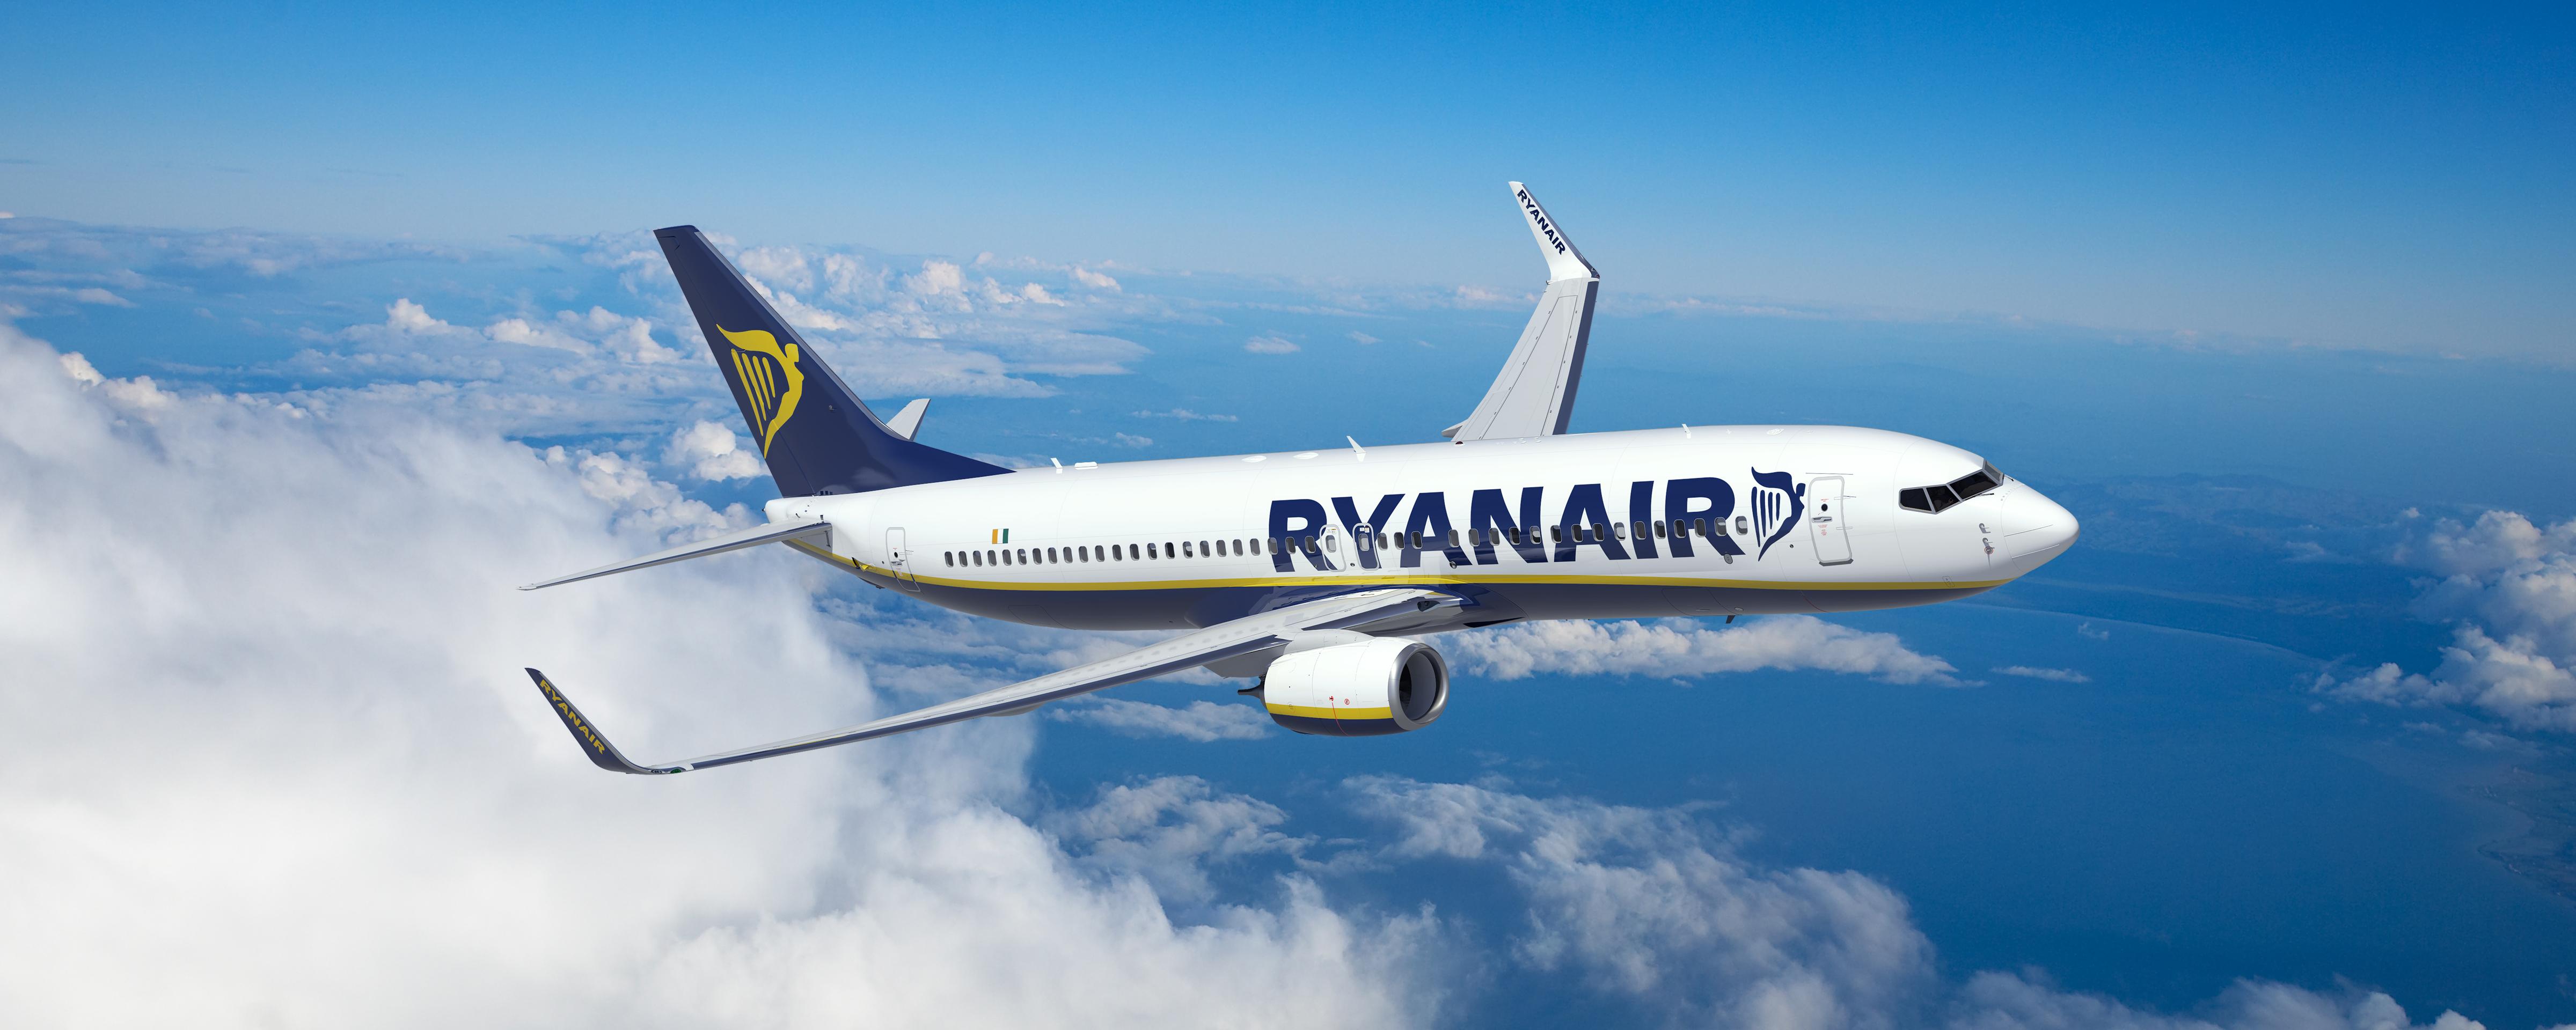 A Ryanair Lança Promoção De Resgate: €28.99 Ponta Delgada – Lisboa Após Easyjet Desistir Desta Rota